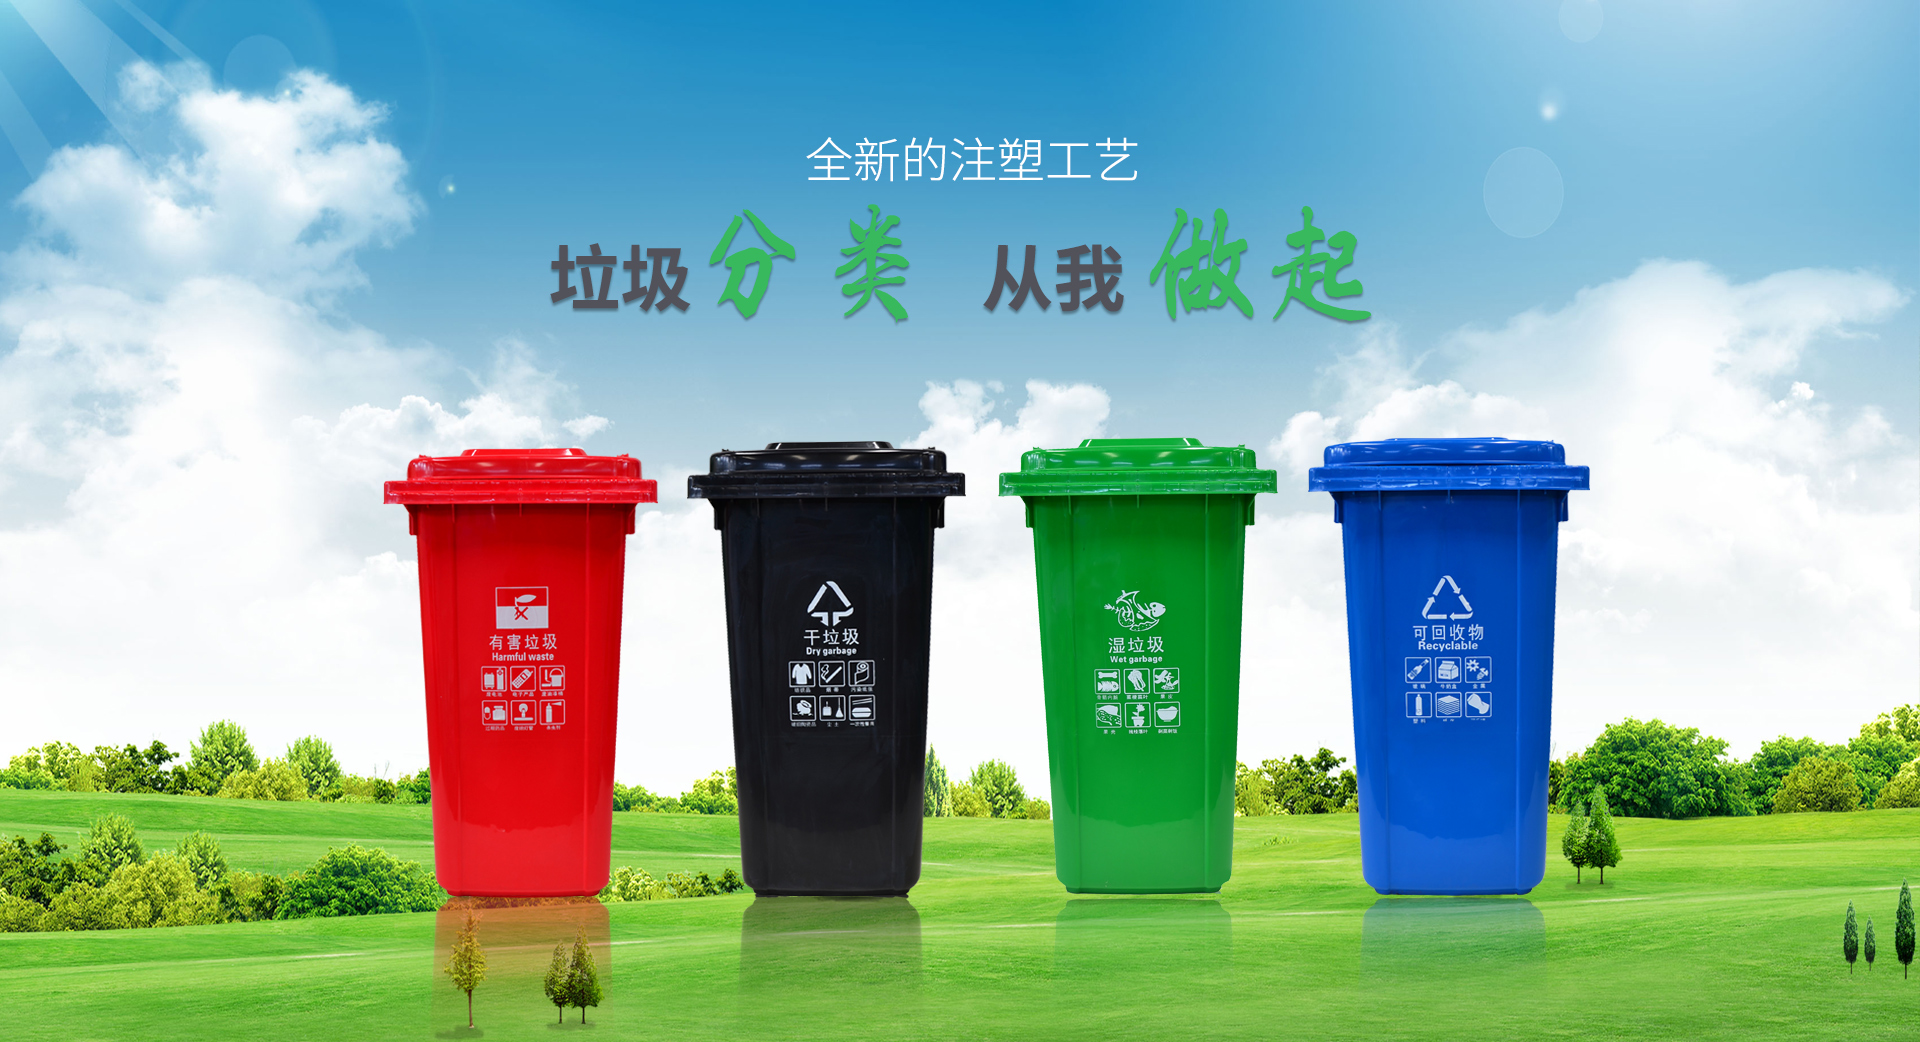 垃圾桶系列--全新的注塑工艺